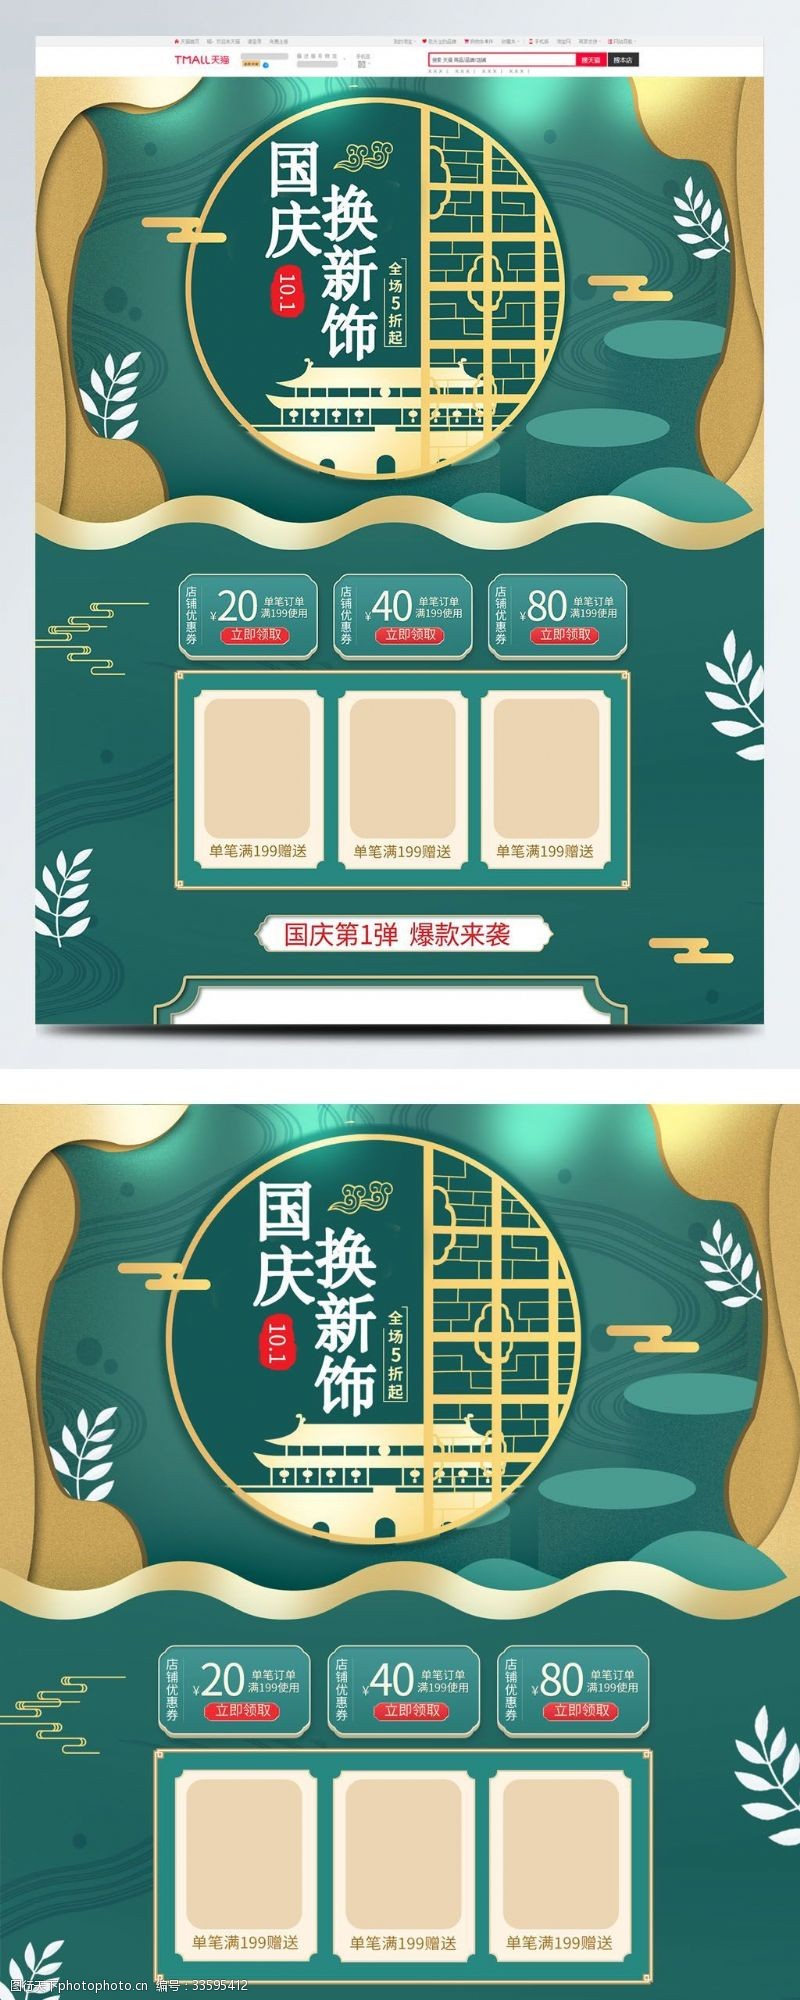 全场商品5折绿色简约电商促销国庆珠宝节首页促销模板